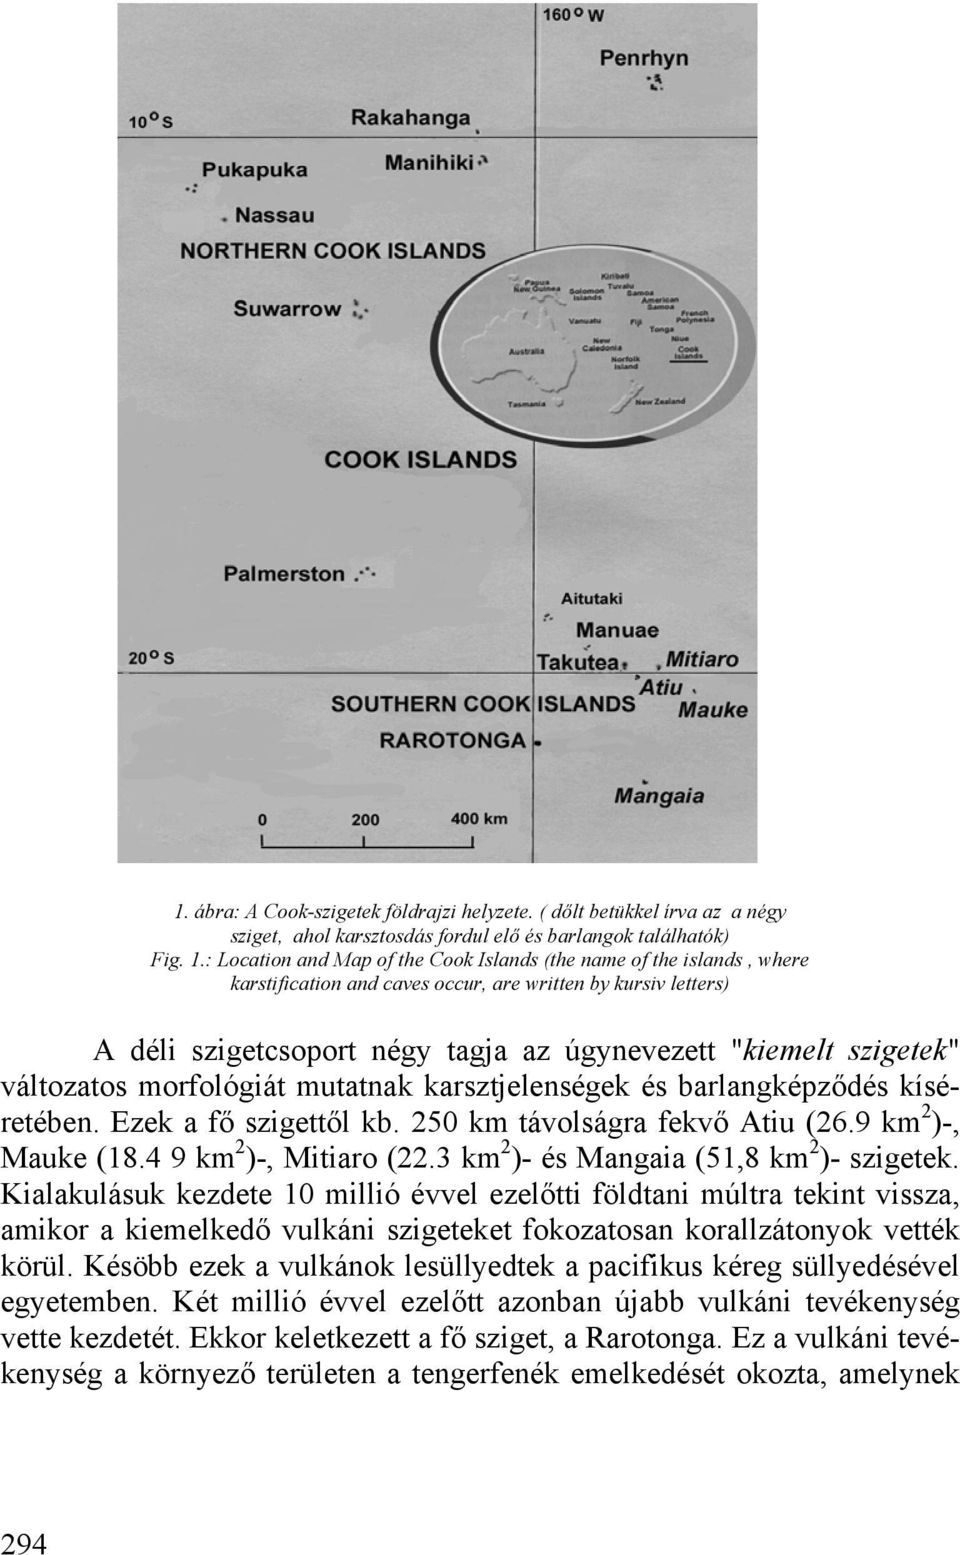 változatos morfológiát mutatnak karsztjelenségek és barlangképződés kíséretében. Ezek a fő szigettől kb. 250 km távolságra fekvő Atiu (26.9 km 2 )-, Mauke (18.4 9 km 2 )-, Mitiaro (22.